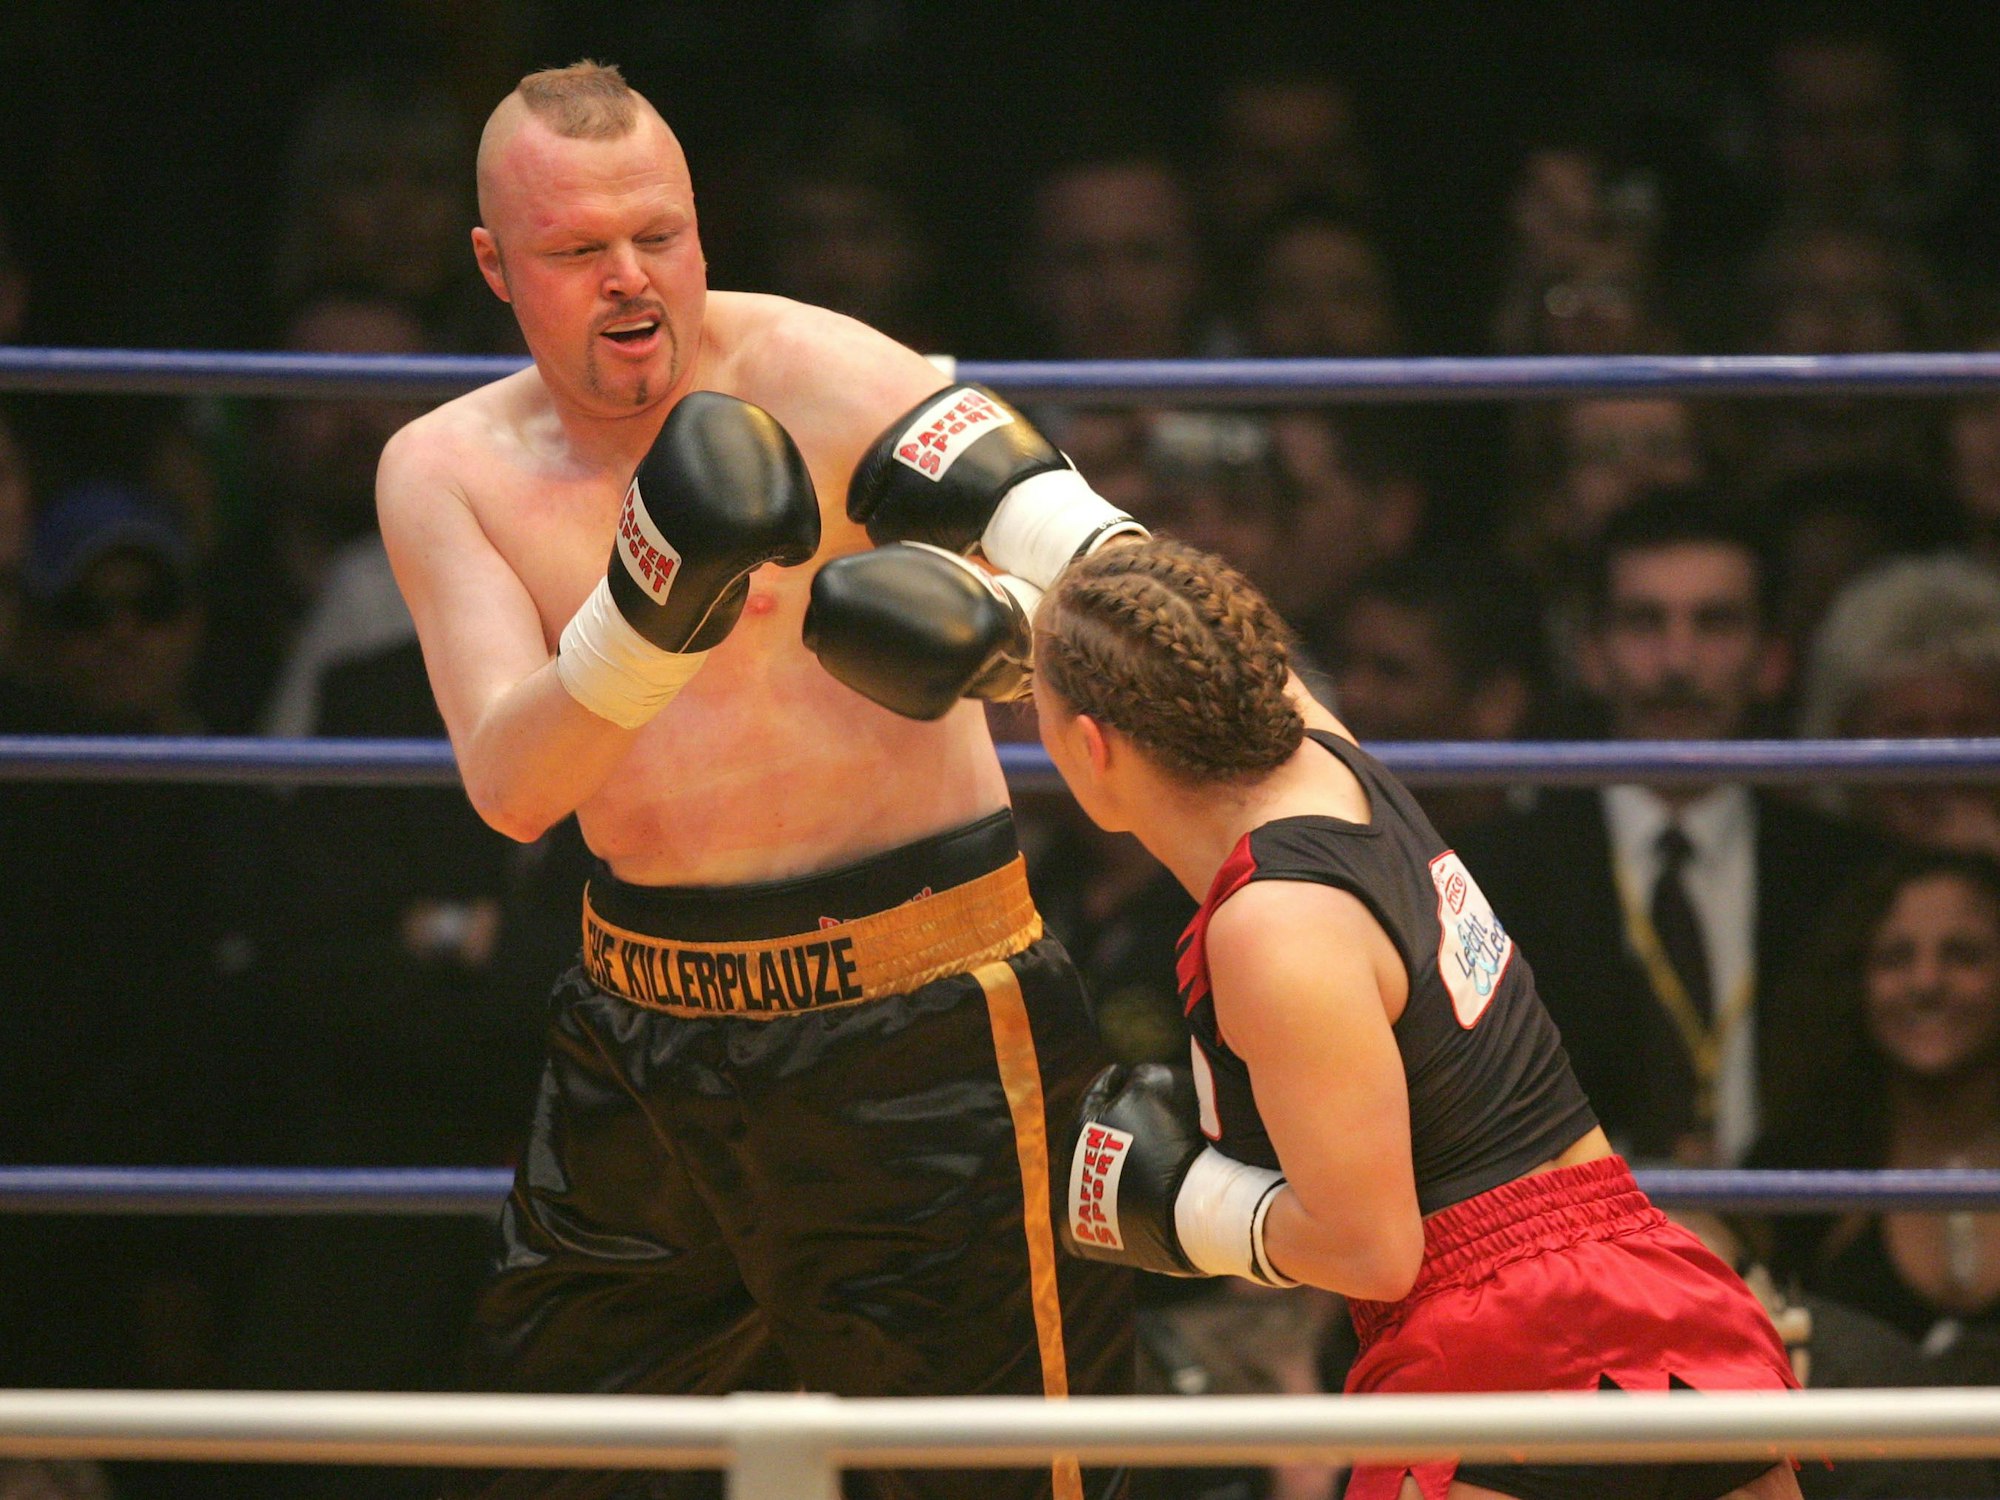 Boxweltmeisterin Regina Halmich (l) und Fernsehmoderator Stefan Raab boxen am Freitag (30.03.2007) in der ausverkauften Kölnarena in Köln gegeneinander.